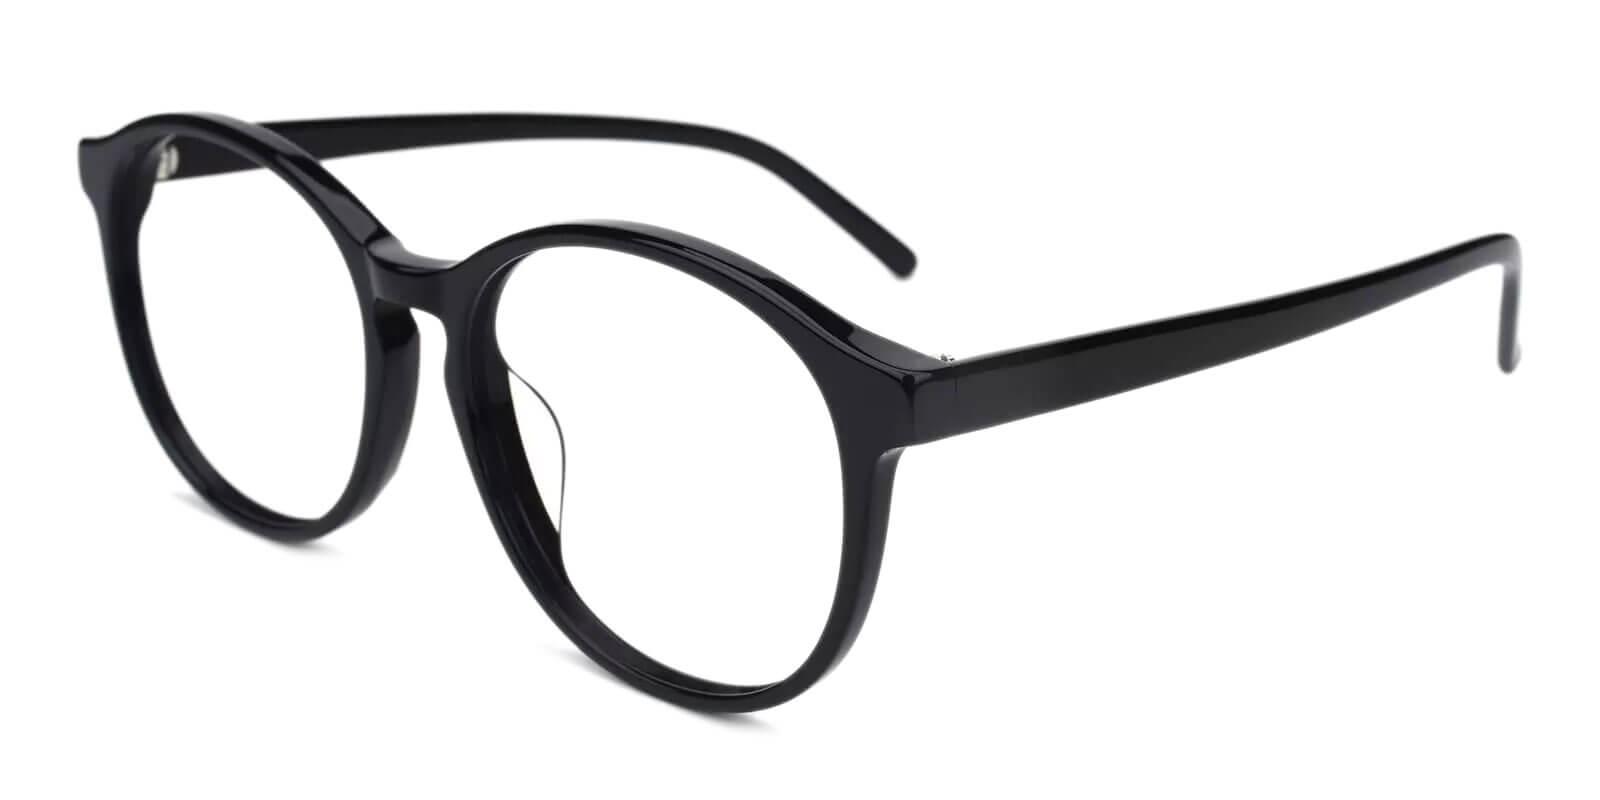 Wasco Black Acetate Eyeglasses , UniversalBridgeFit Frames from ABBE Glasses